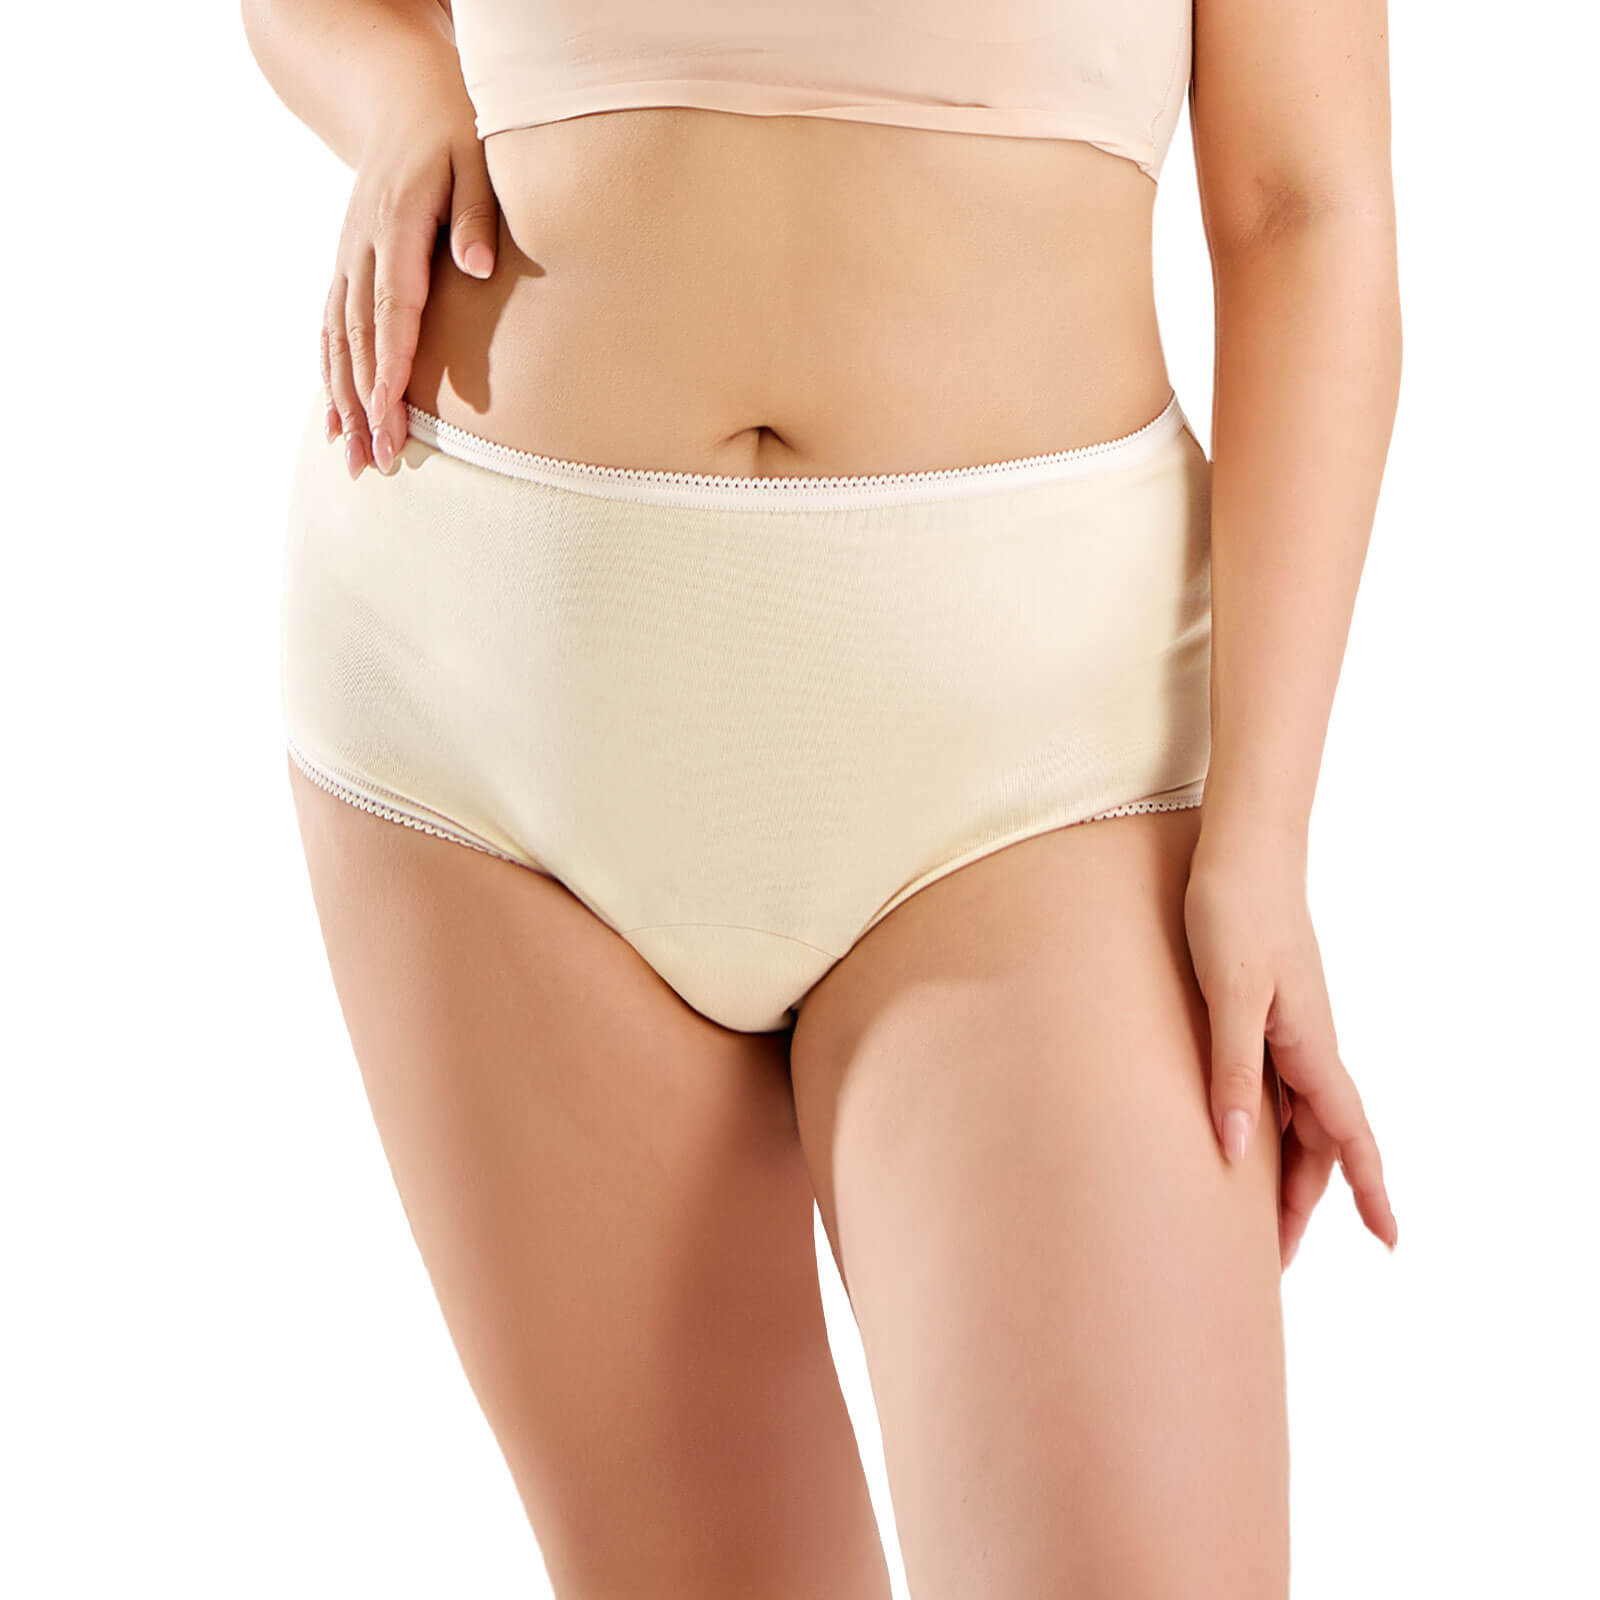 Assurance Incontinence & Postpartum Underwear for Women, Maximum S/M/L/XL ✓